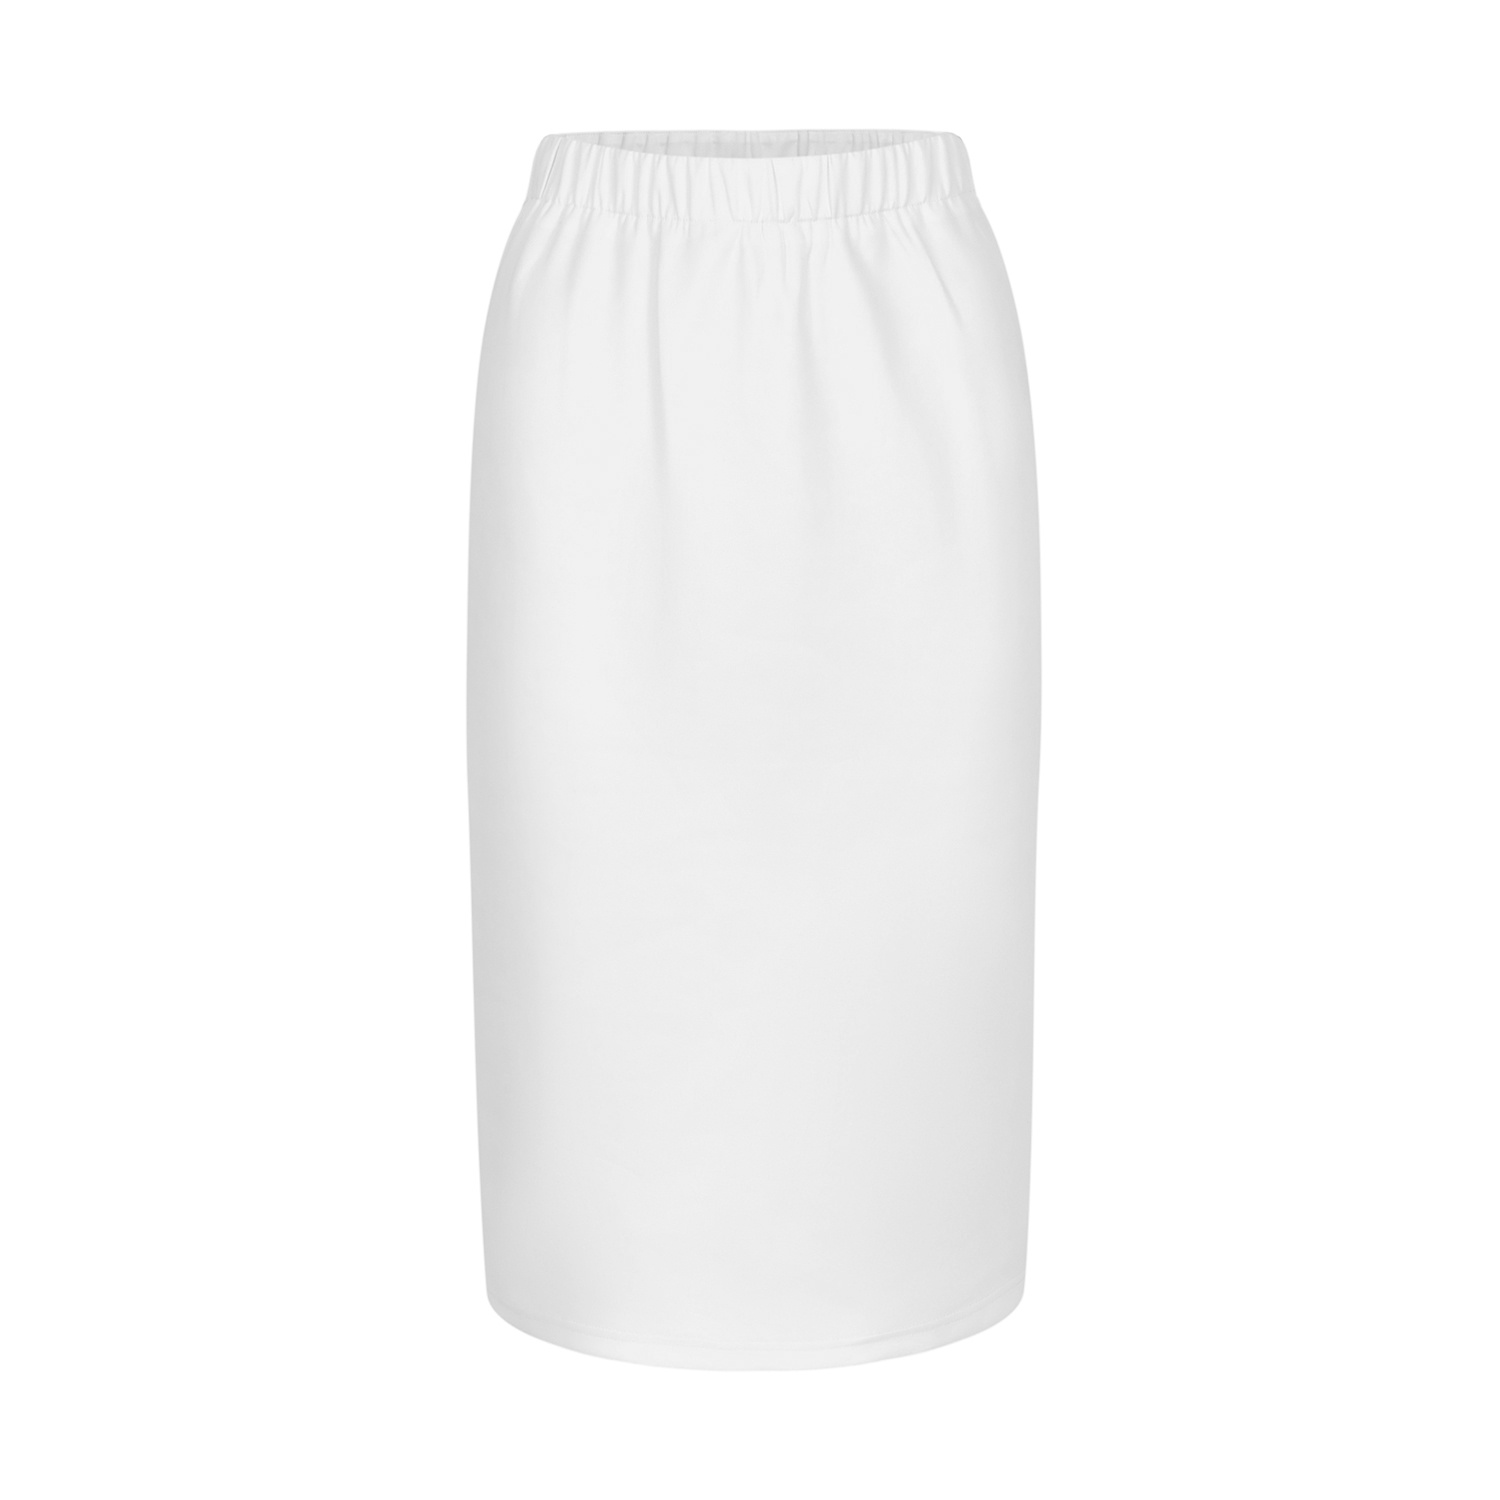 All-over print AOP women's pencil skirt - Print On Demand|HugePOD